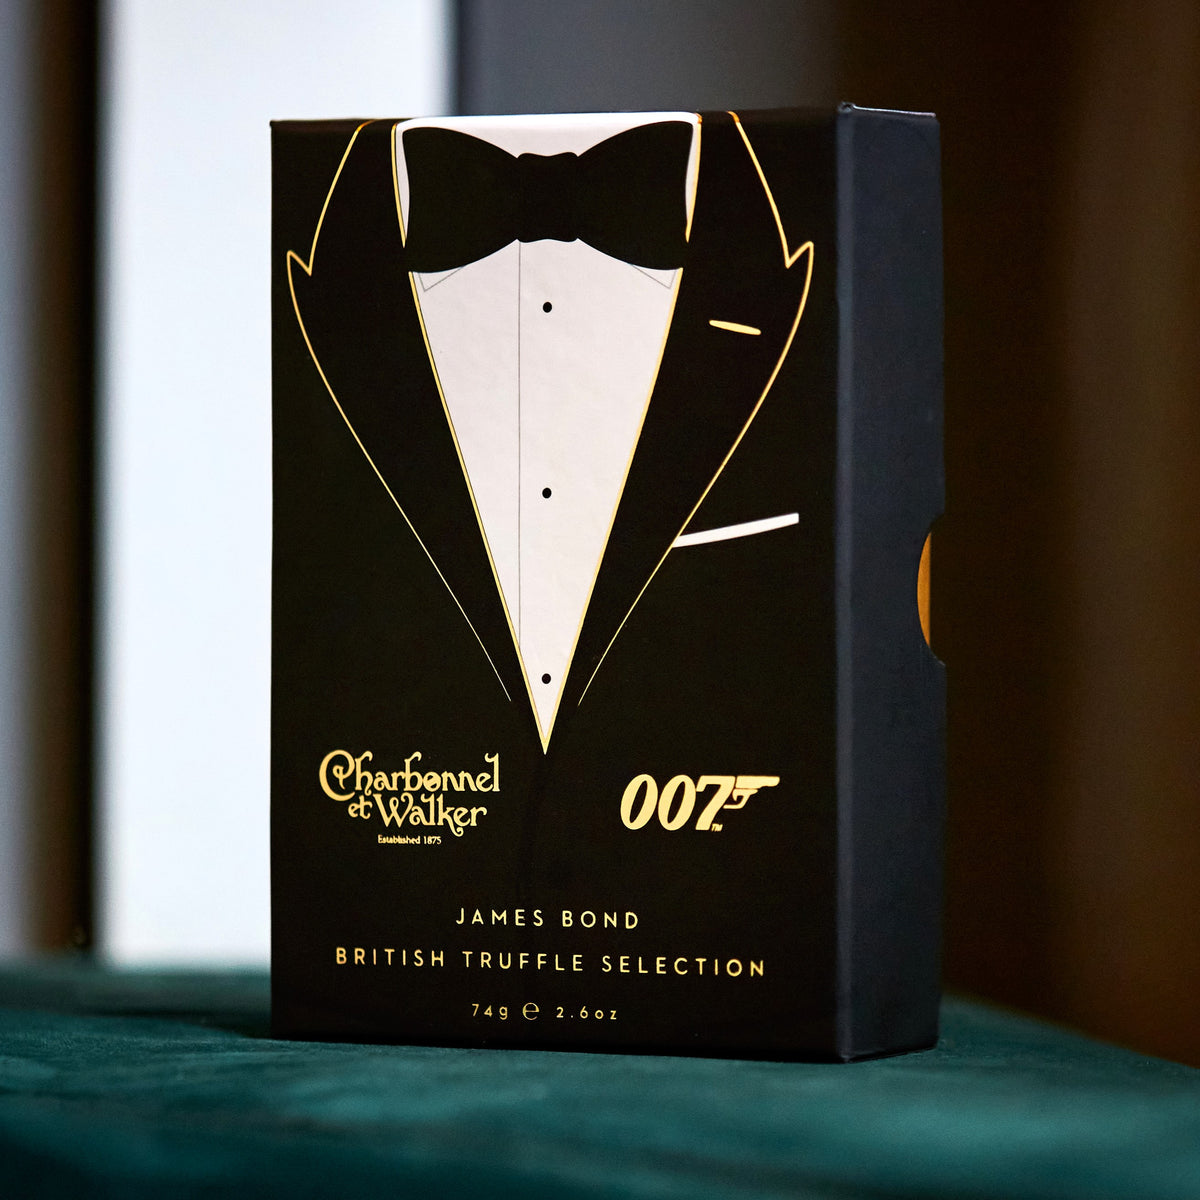 James Bond Black Tie Truffle Box - By Charbonnel et Walker (74g)